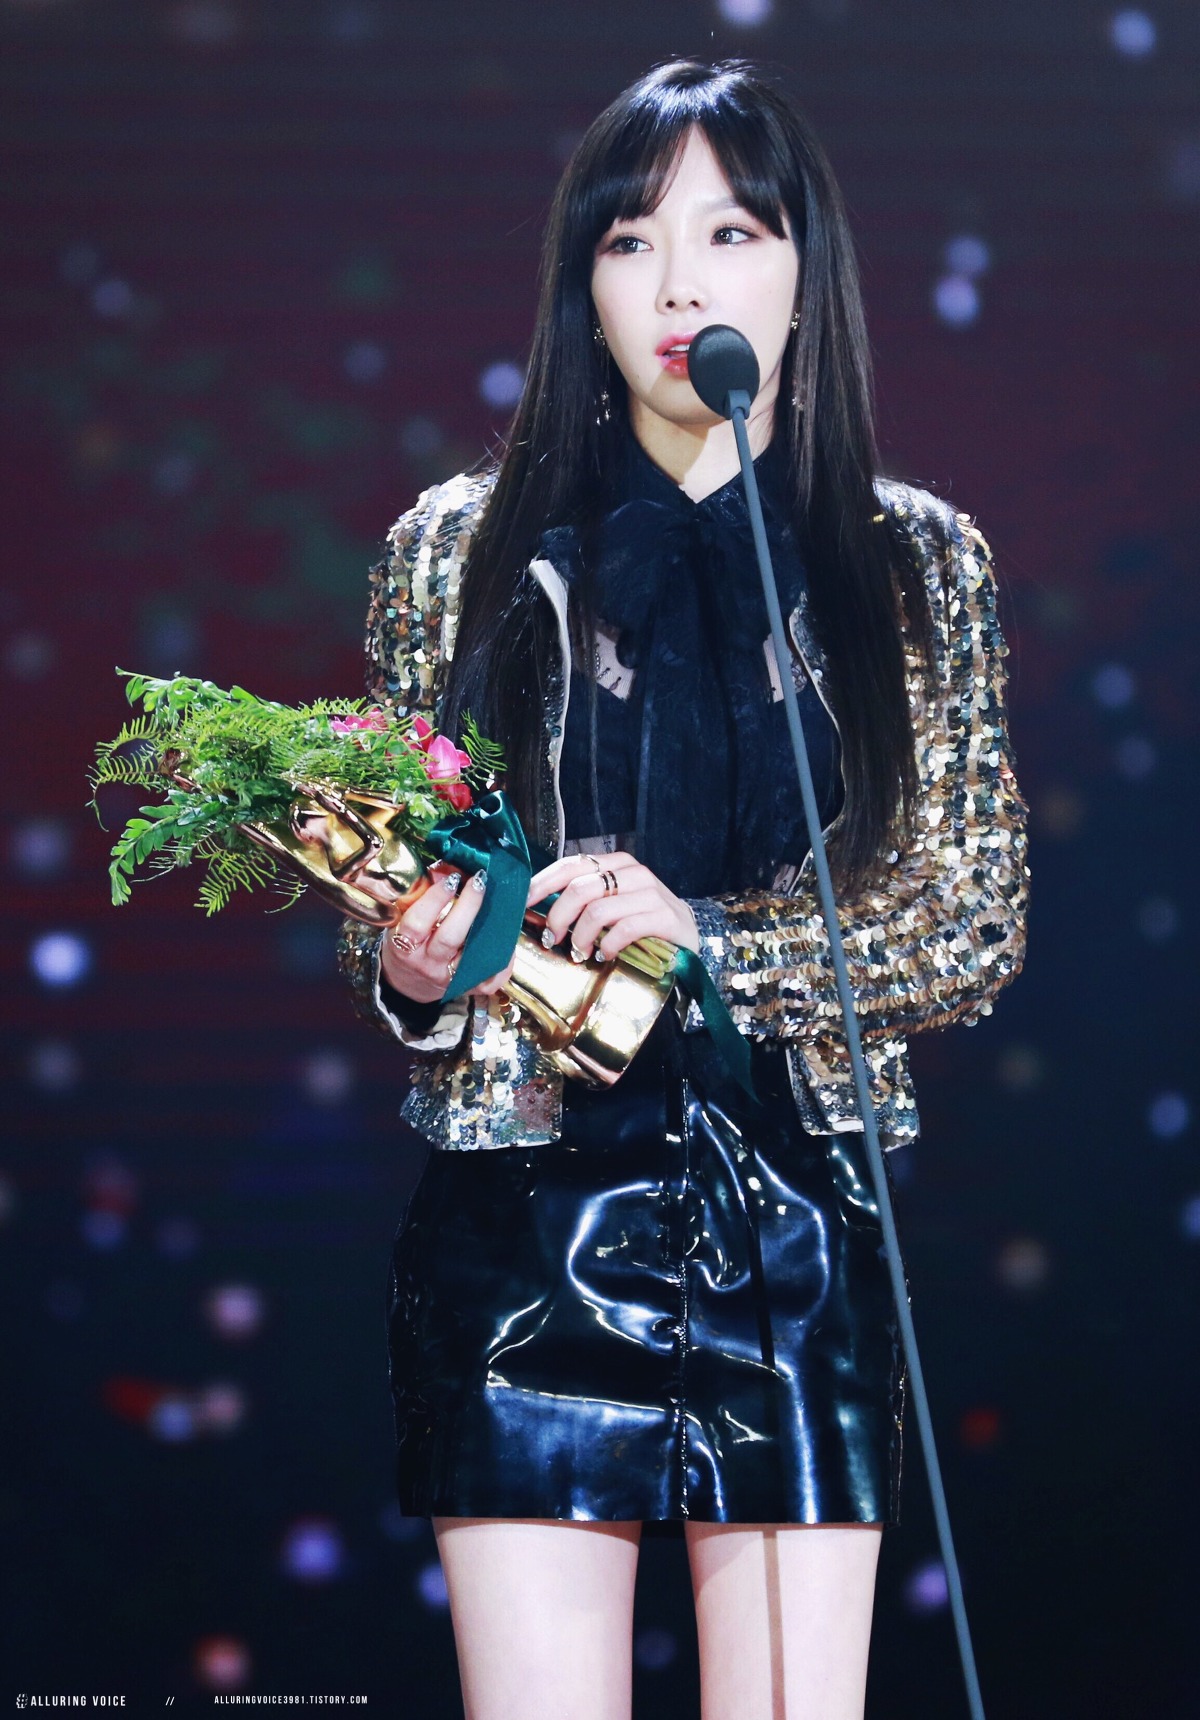 [PIC][13-01-2017]Hình ảnh mới nhất từ "31st Golden Disk Awards" của TaeYeon và MC SeoHyun - Page 3 22606041587B35730E6A63